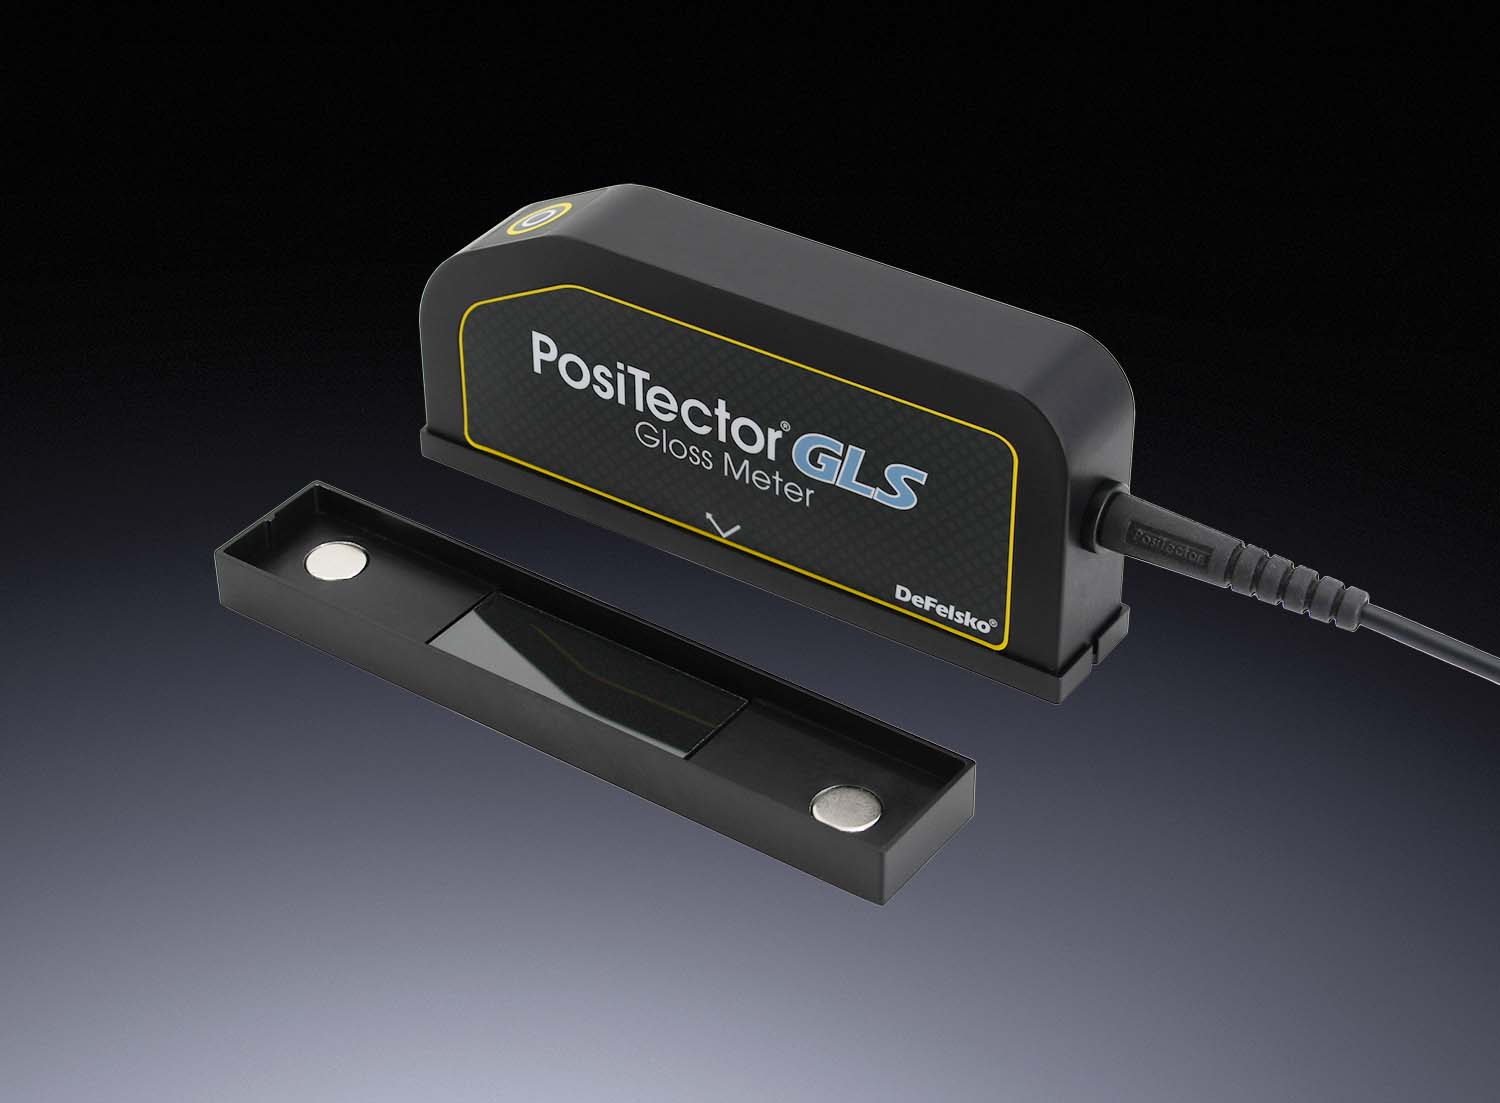 PosiTector GLS gloss meters